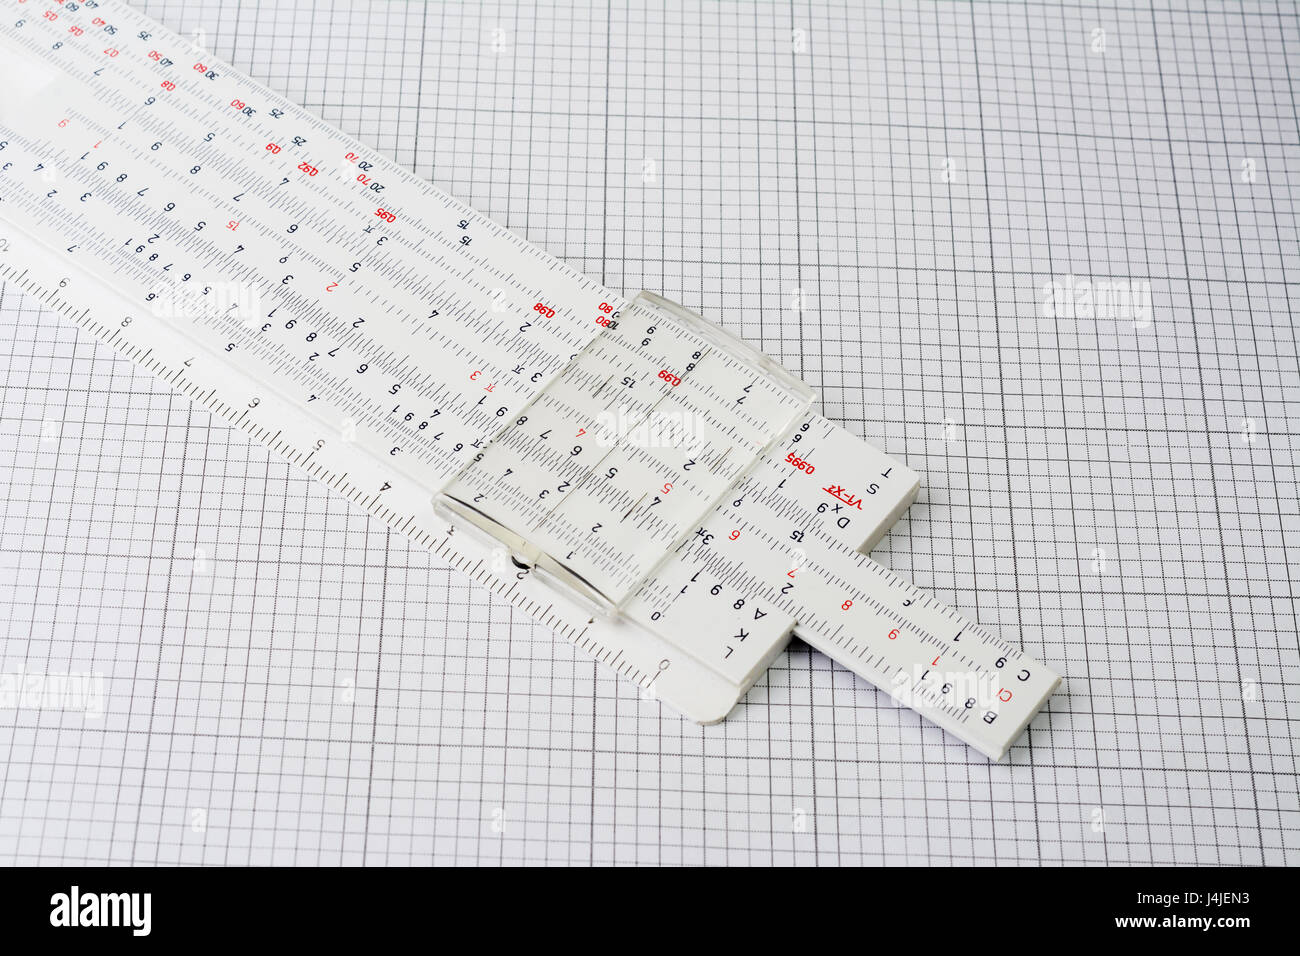 Old plastic slide ruler on millimeter paper Stock Photo